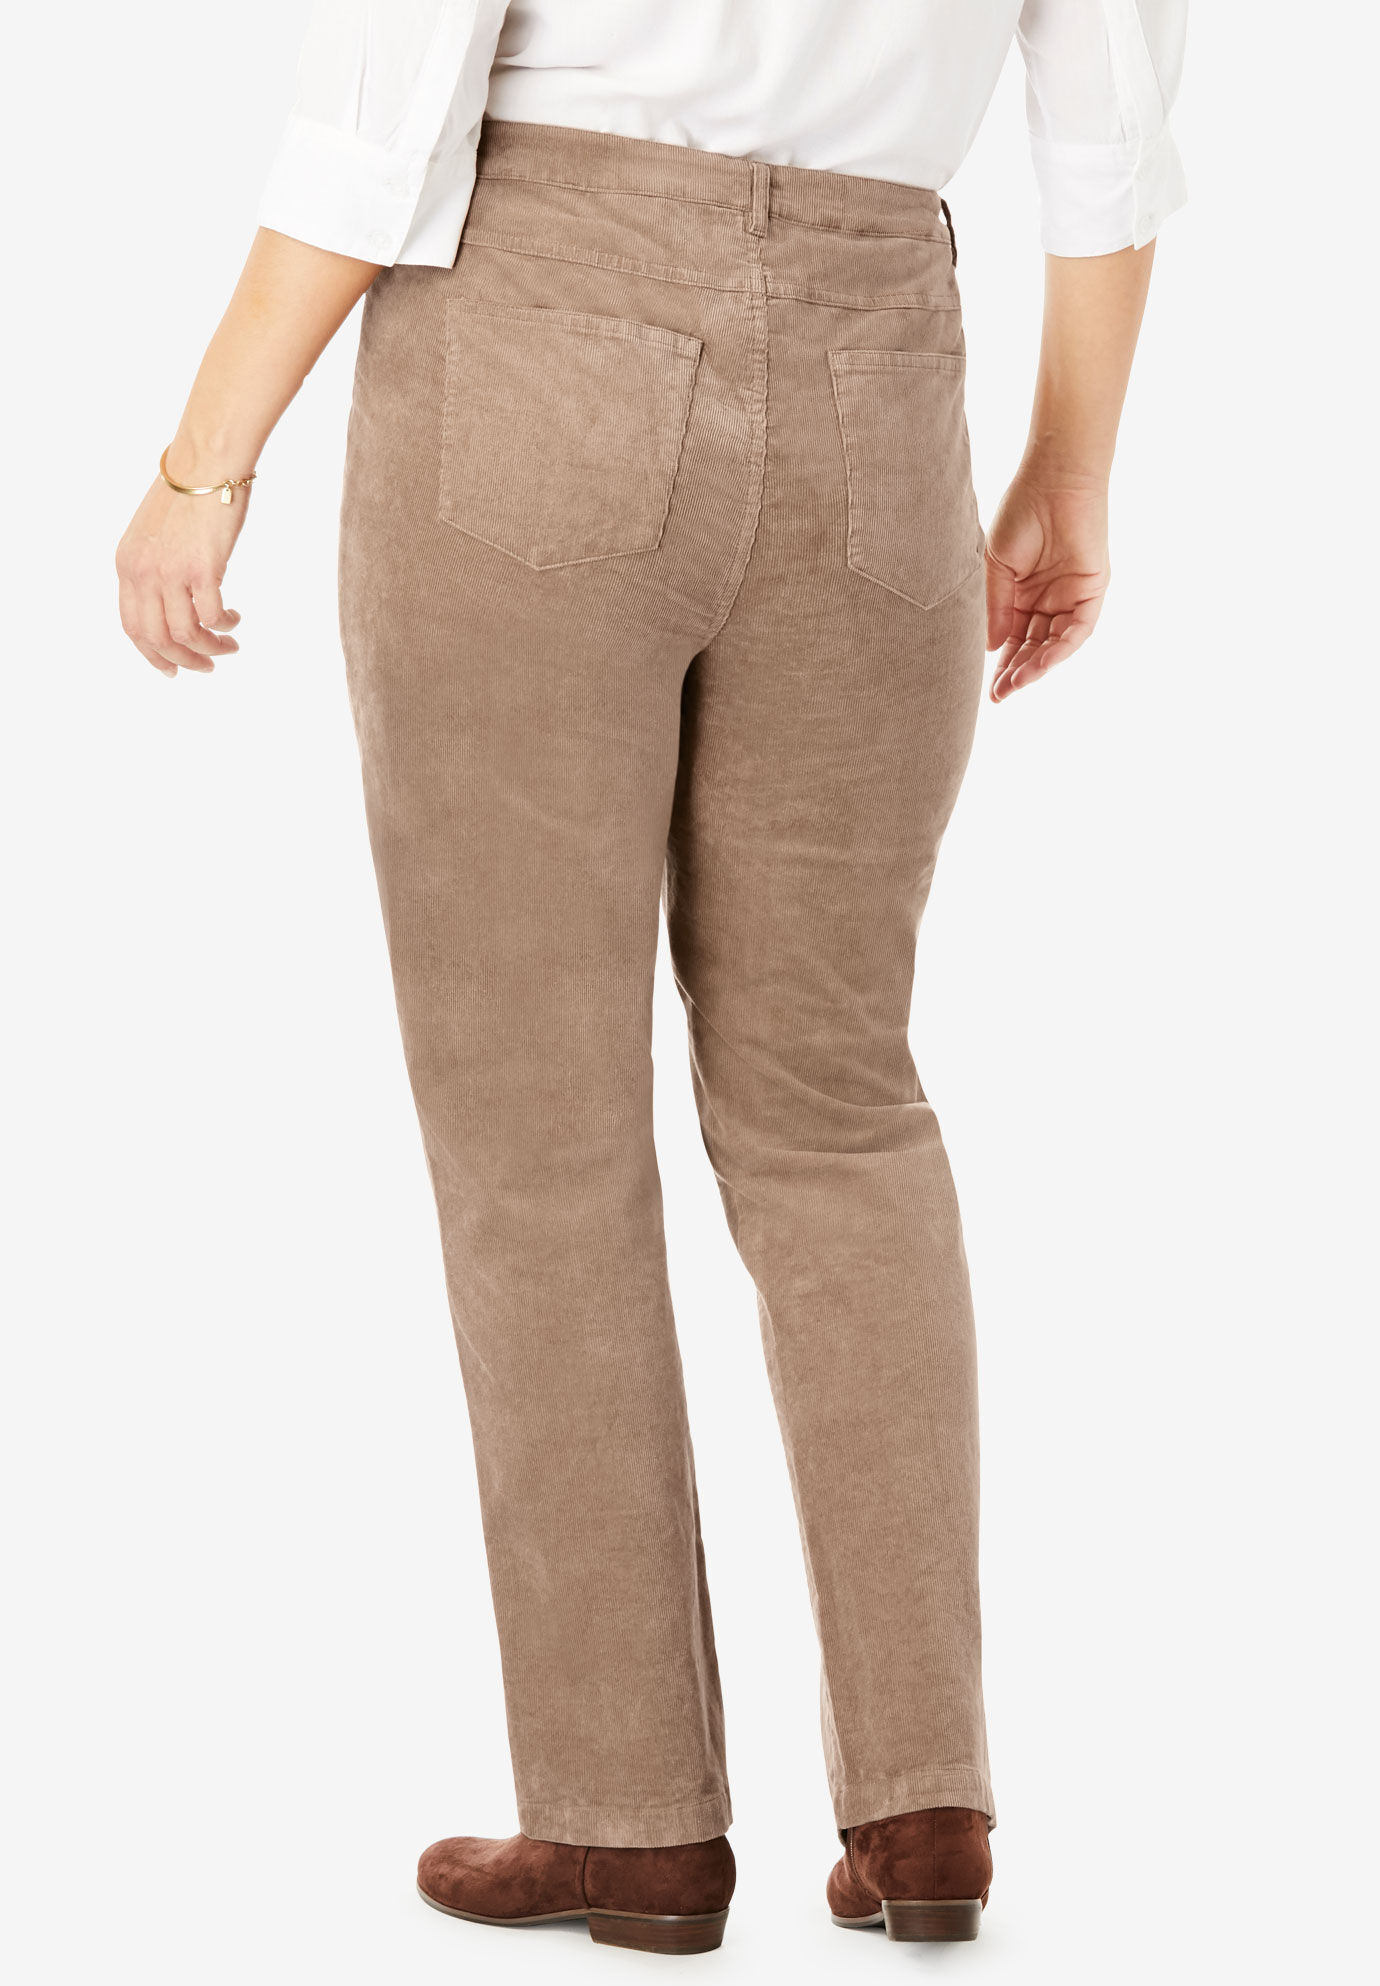 women's stretch corduroy pants